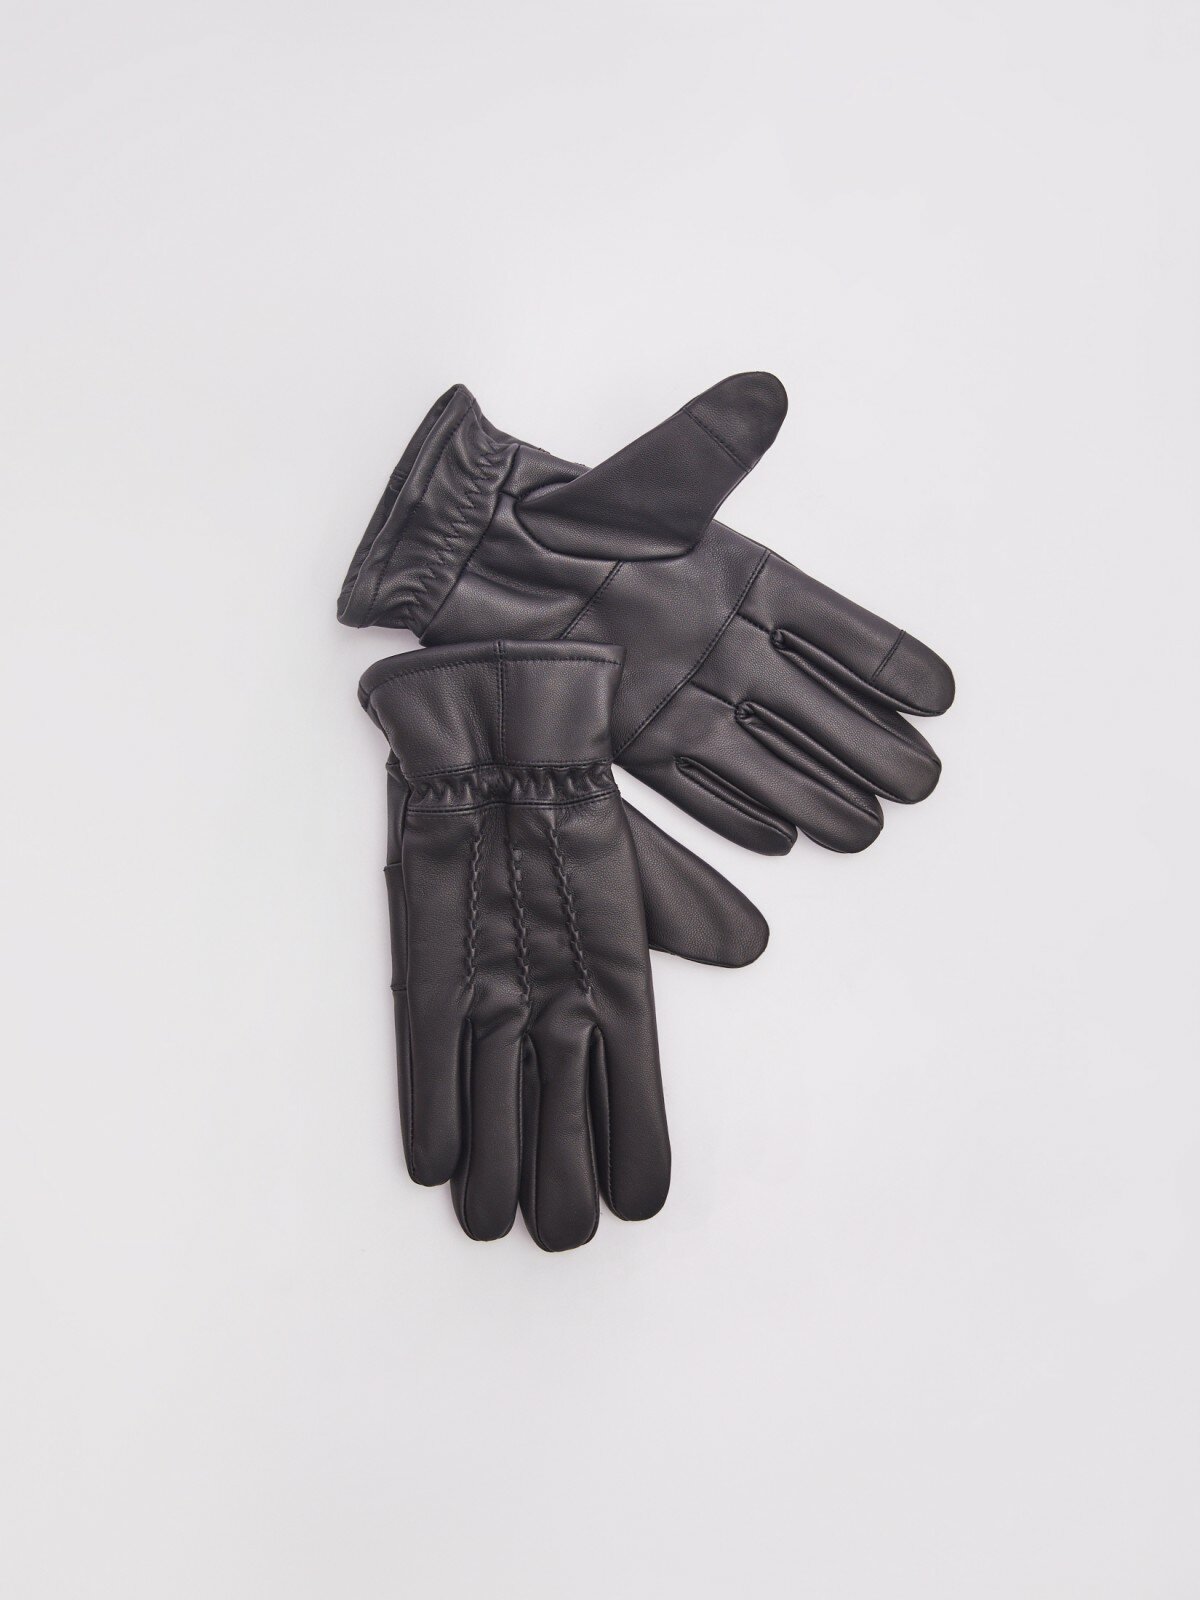 Тёплые кожаные перчатки с экомехом цвет Черный размер XL